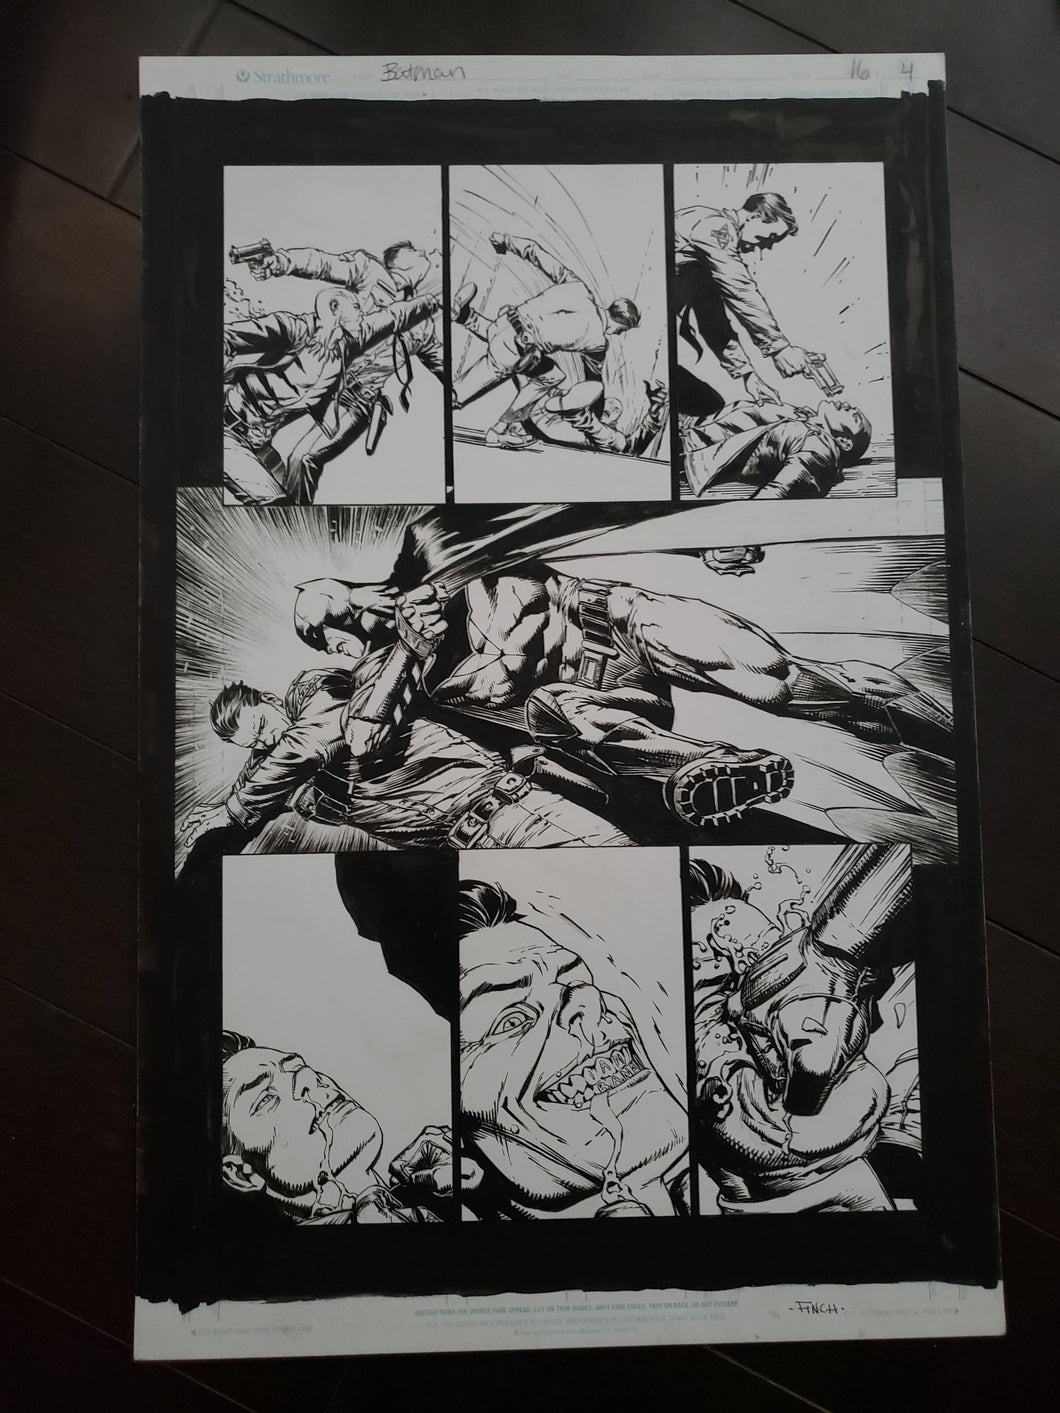 BATMAN #16 PAGE 4 - DAVID FINCH